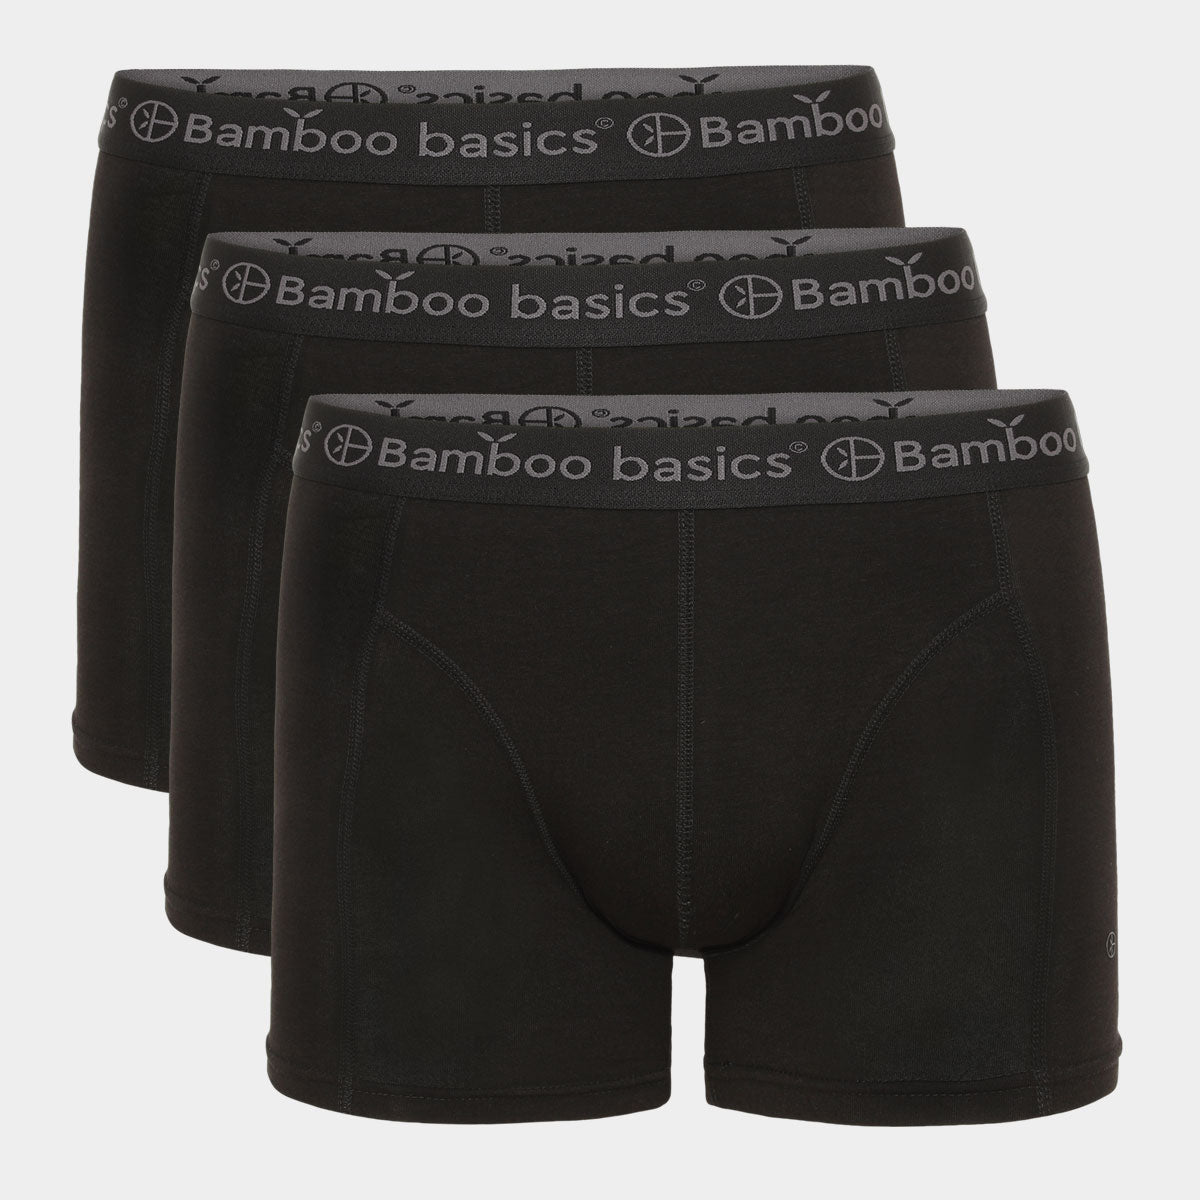 Billede af Bambus underbukser til herre - 3 pak sort - Bamboo Basics, S